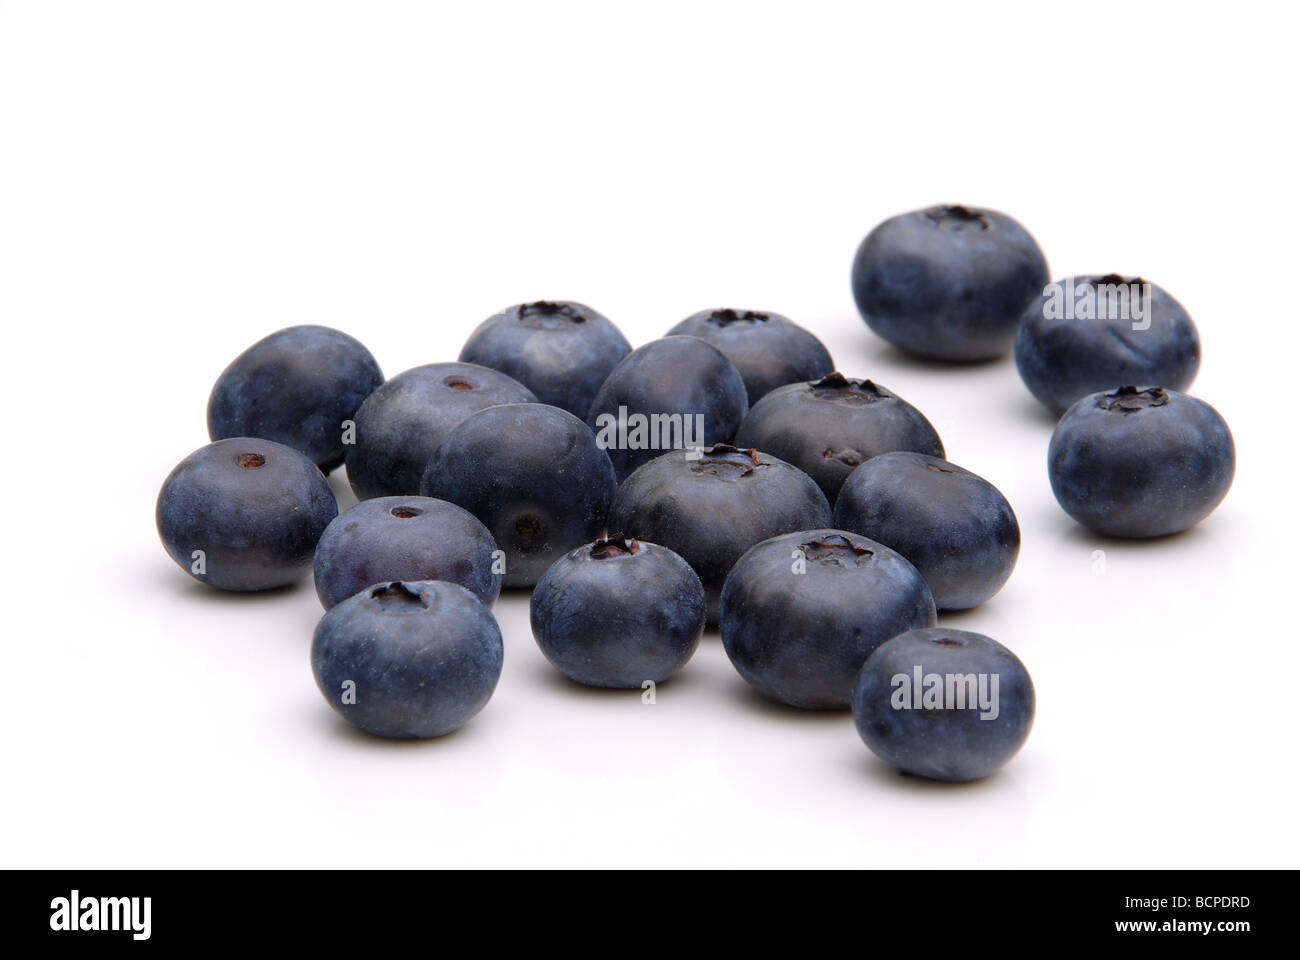 Heidelbeere blueberry 05 Stock Photo